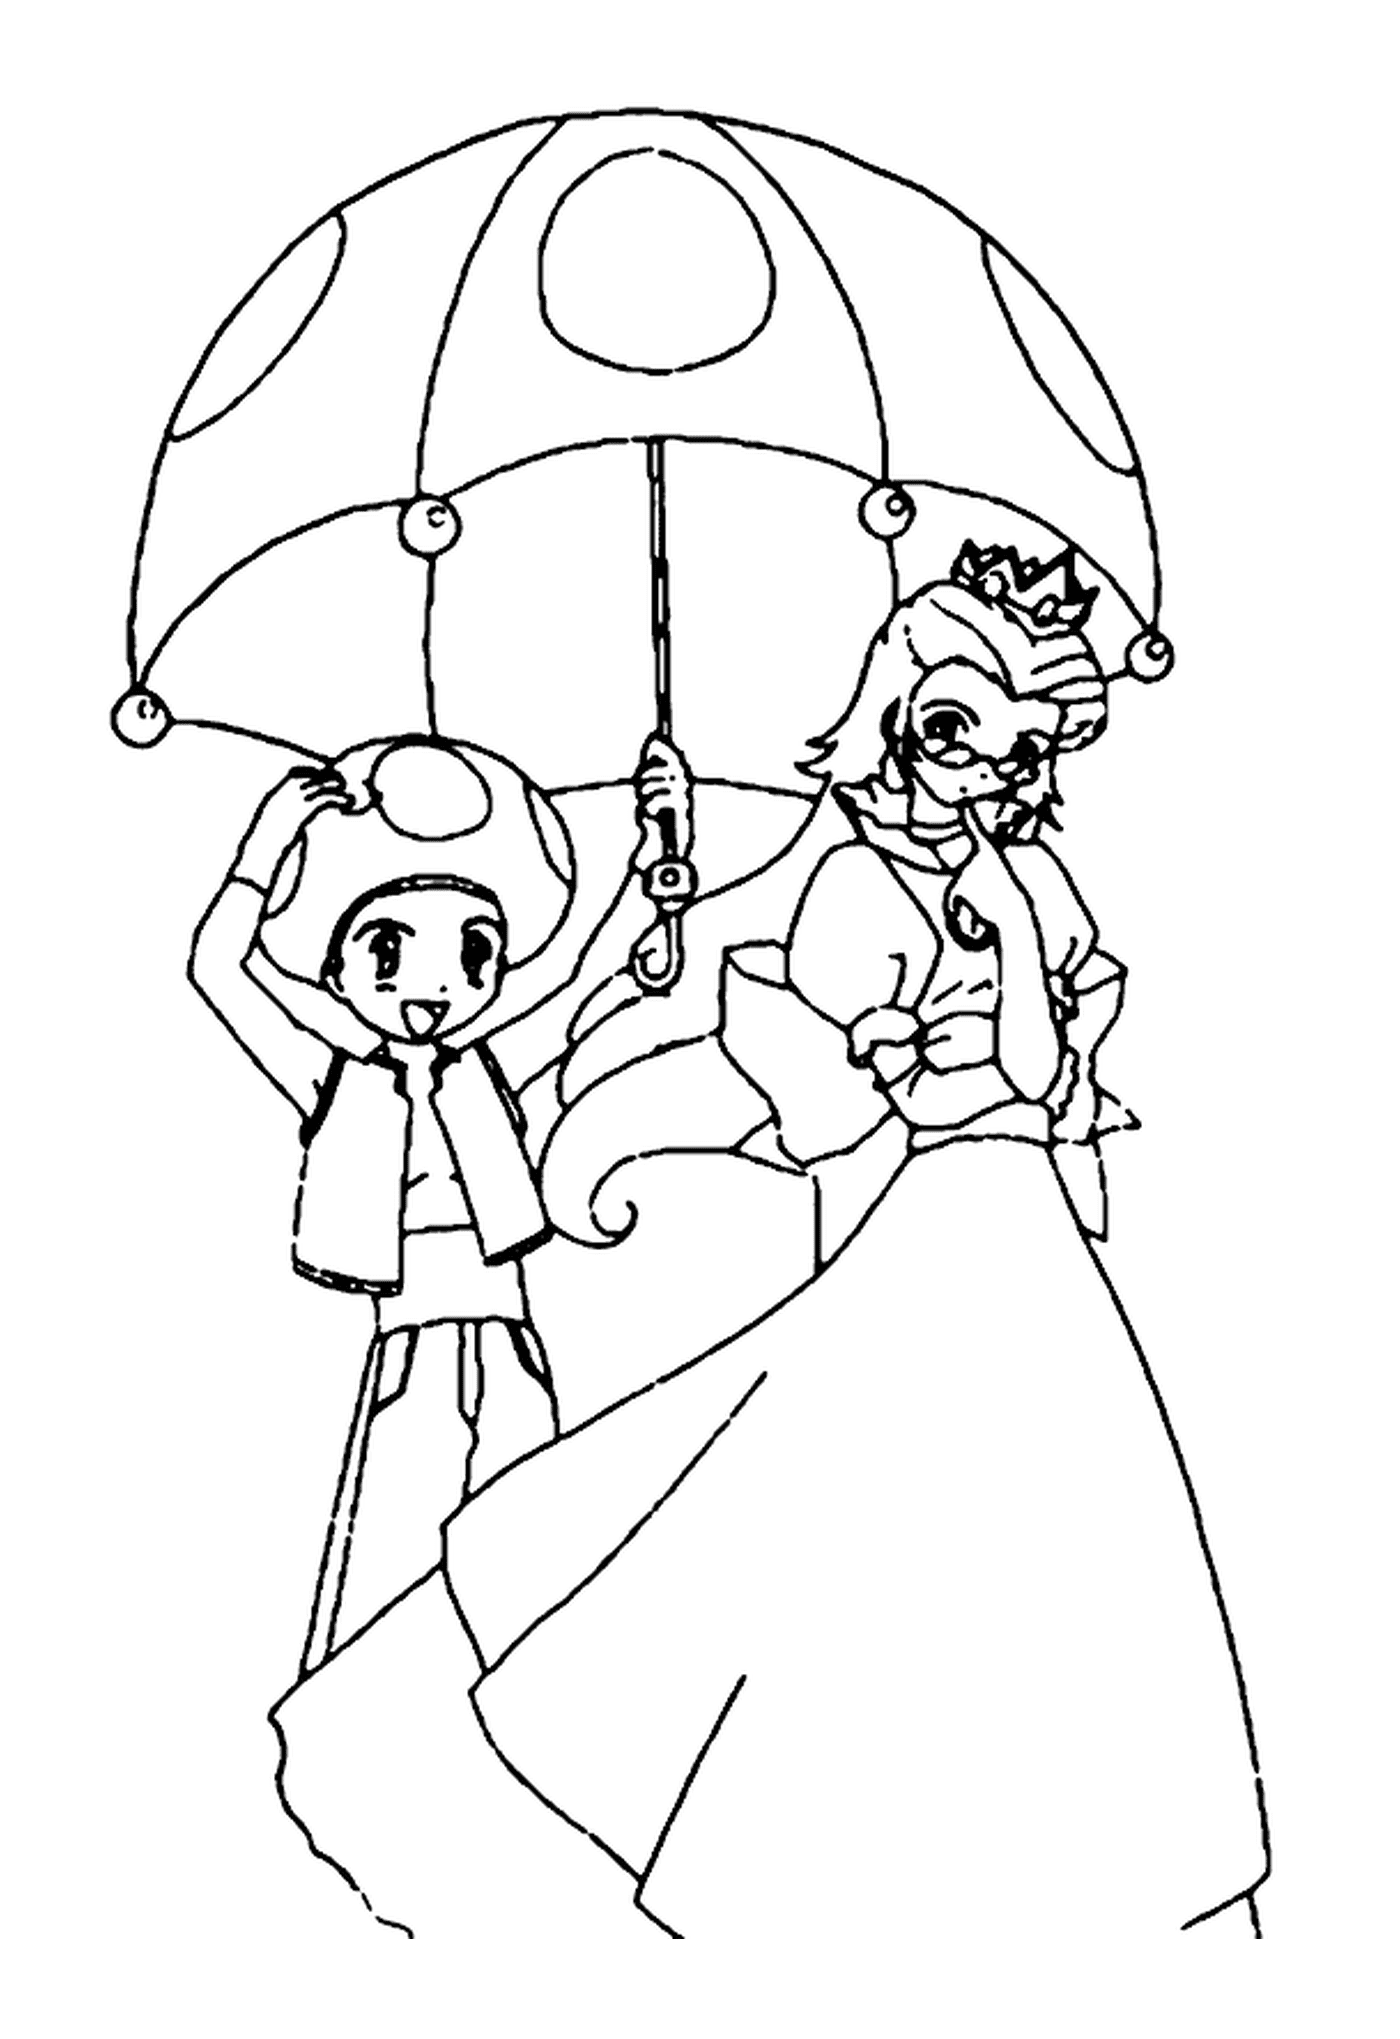  राजकुमार और माँ, एक बुज़ुर्ग स्त्री ने छाते में छाते और एक जवान लड़के को छाते में रखा 